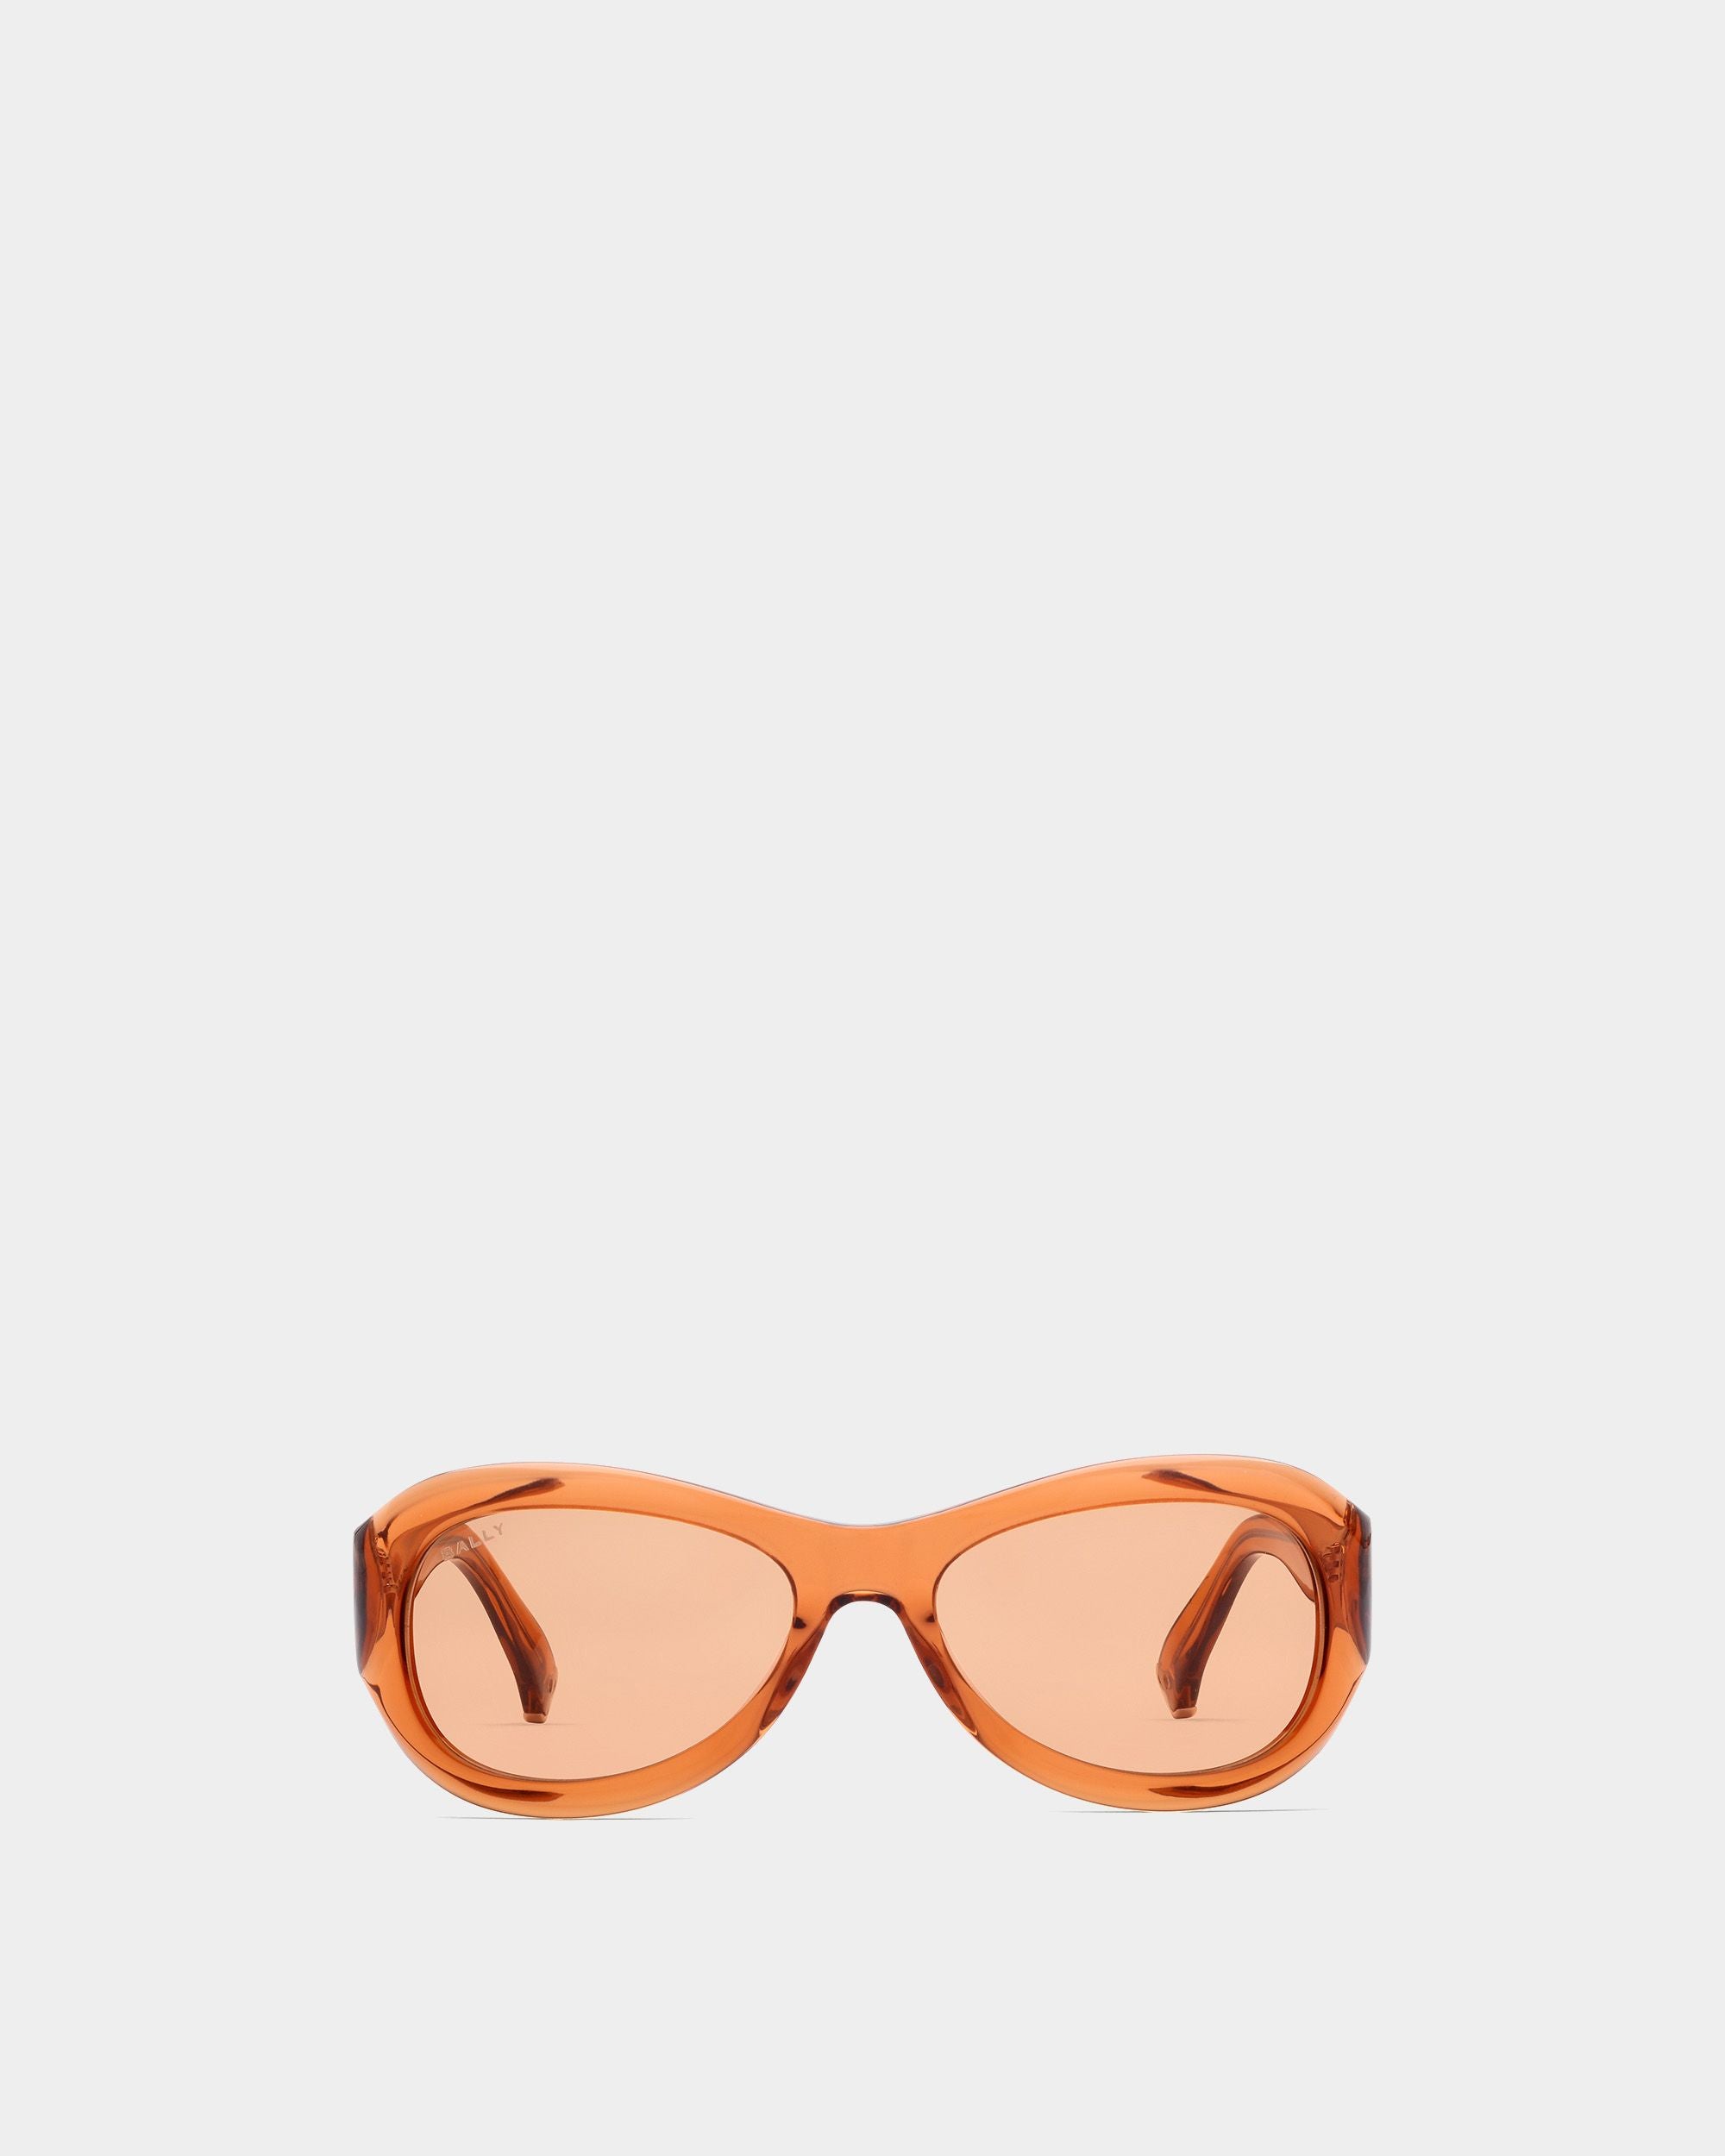 Occhiali da sole Maurice | Accessori unisex | Acetato ambra con lenti arancioni | Bally | Still Life Fronte